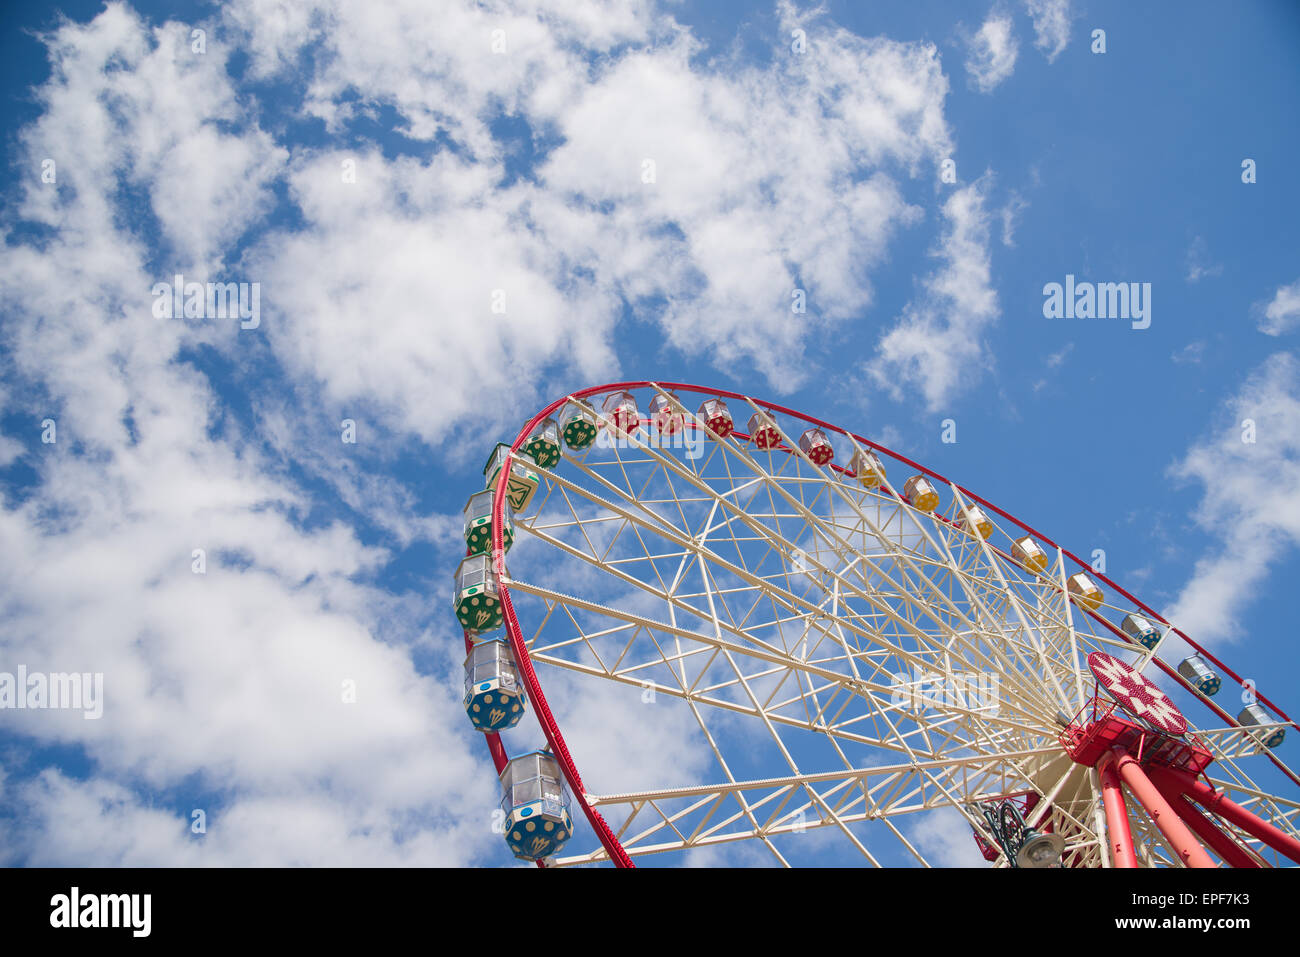 Atraktsion Ferris Wheel vor blauem Himmel mit Wolken Stockfoto